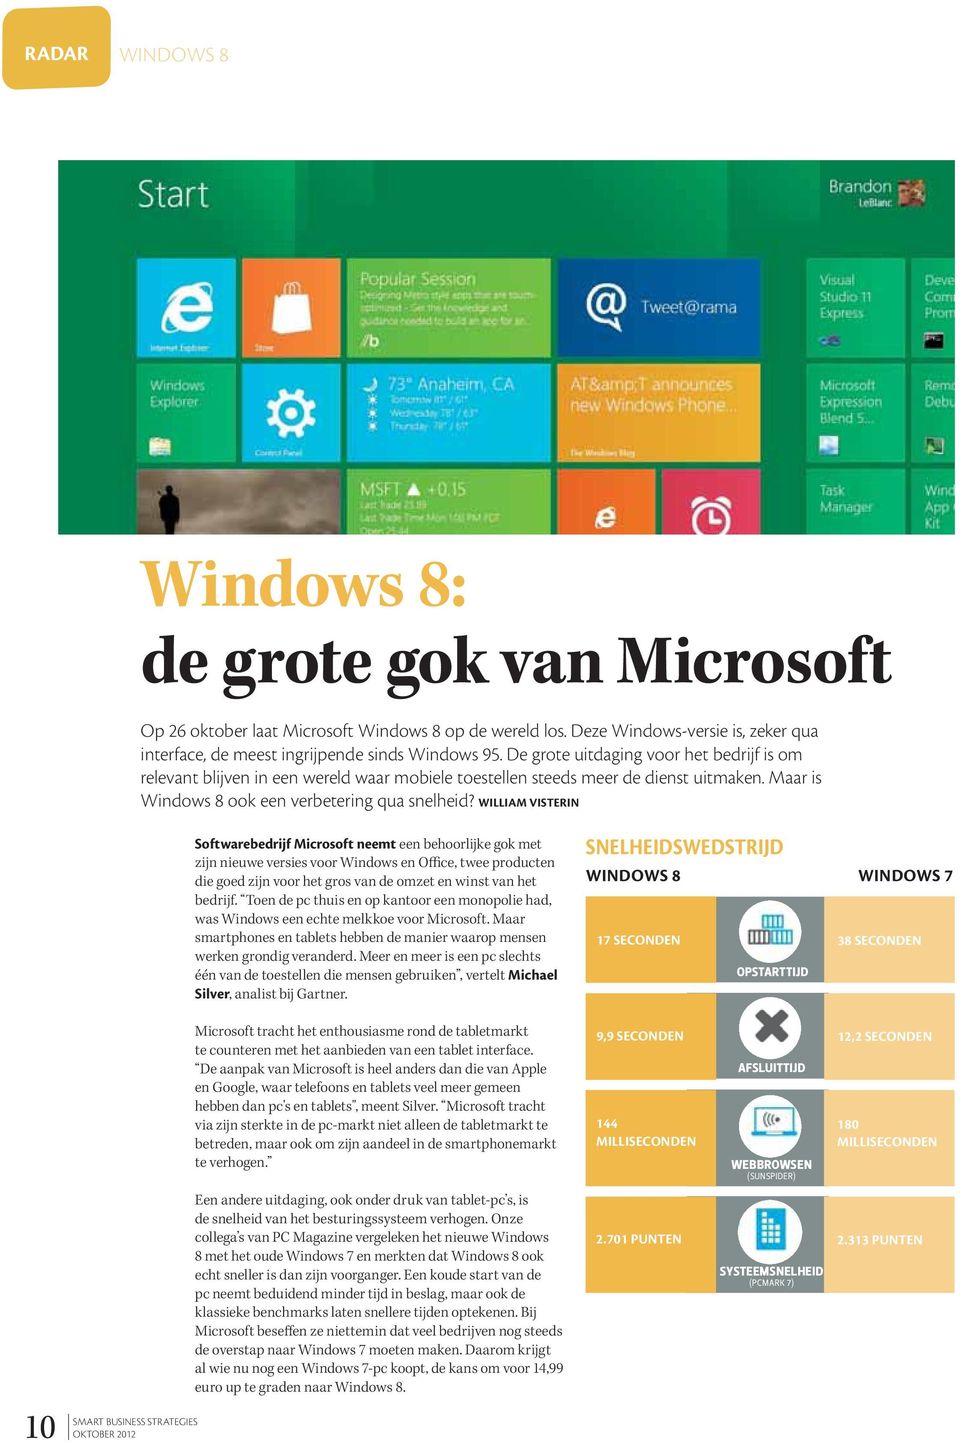 WILLIAM VISTERIN Softwarebedrijf Microsoft neemt een behoorlijke gok met zijn nieuwe versies voor Windows en Office, twee producten die goed zijn voor het gros van de omzet en winst van het bedrijf.